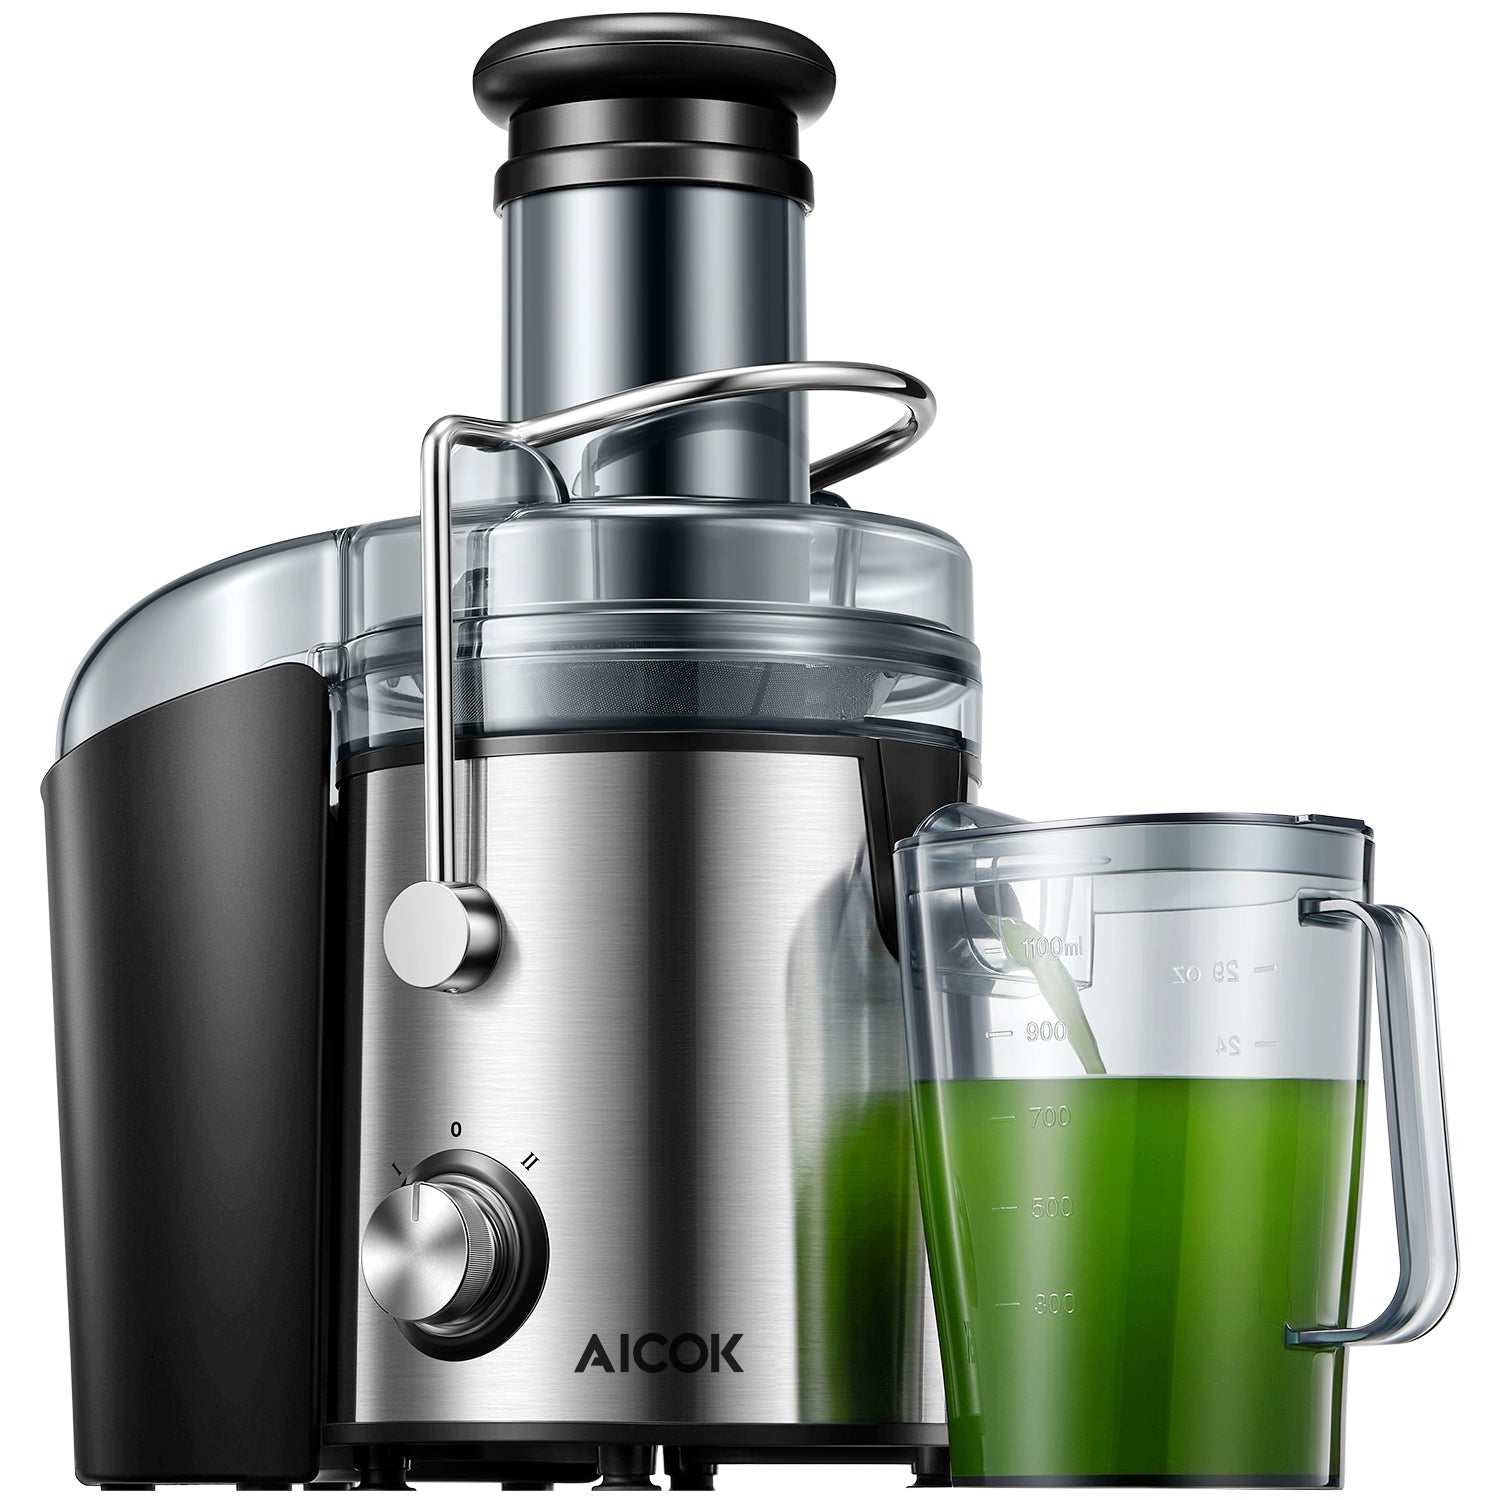 AICOK-Juicer, 1000W Stainless Steel Juicer Machines GS-332 Efficiency Juicer Machine fresh and healthy juice best juicer 2021